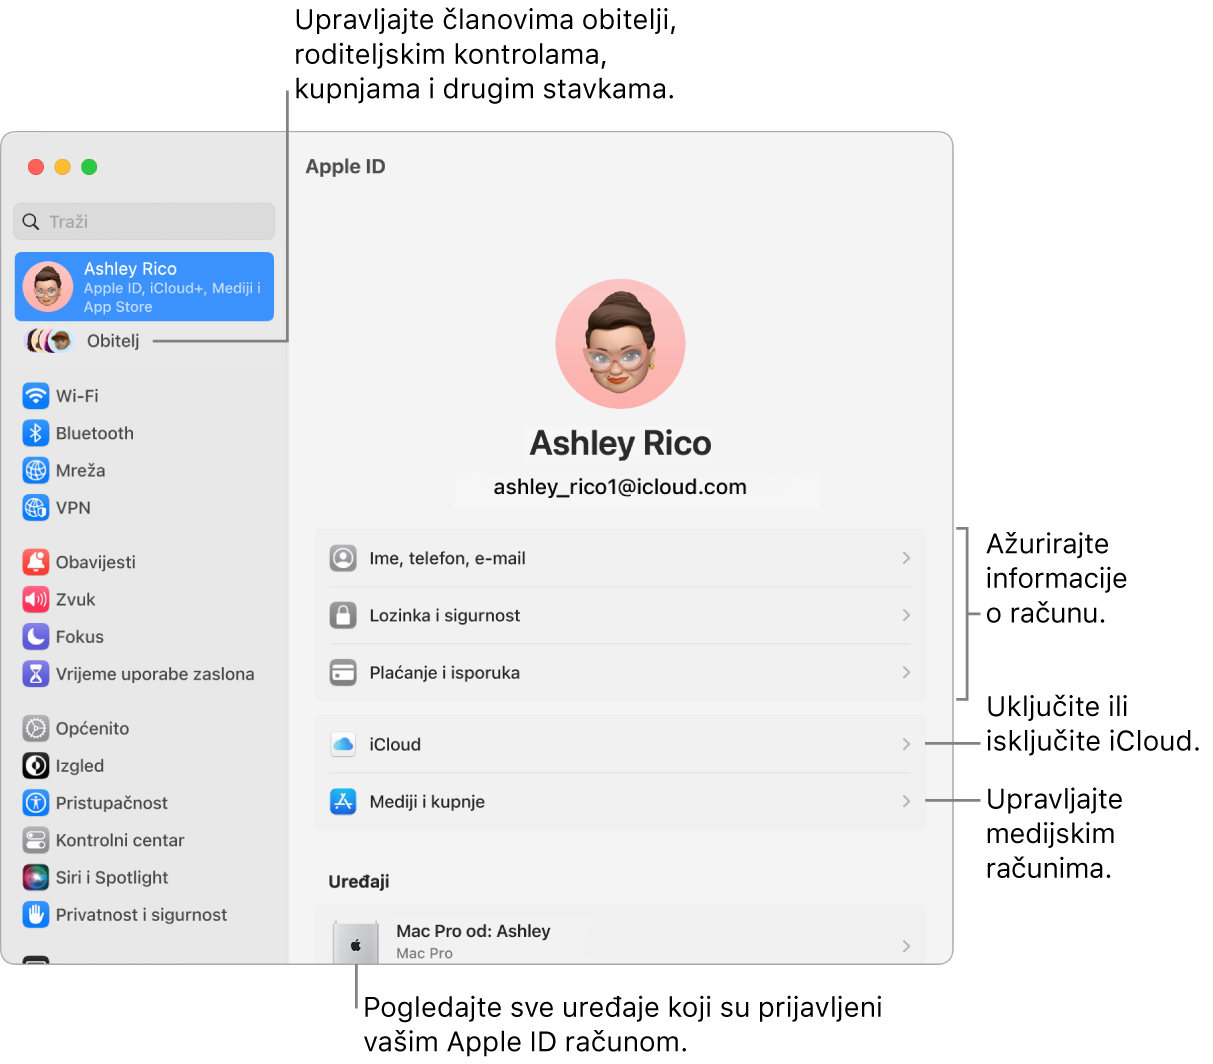 Prozor Apple ID-ja u Postavkama sustava s oblačićima za ažuriranje informacija o računu, uključivanje ili isključivanje značajki iClouda, upravljanje medijskim računima i Obitelji, gdje možete upravljati članovima obitelji, roditeljskim kontrolama, kupnjama i ostalim.